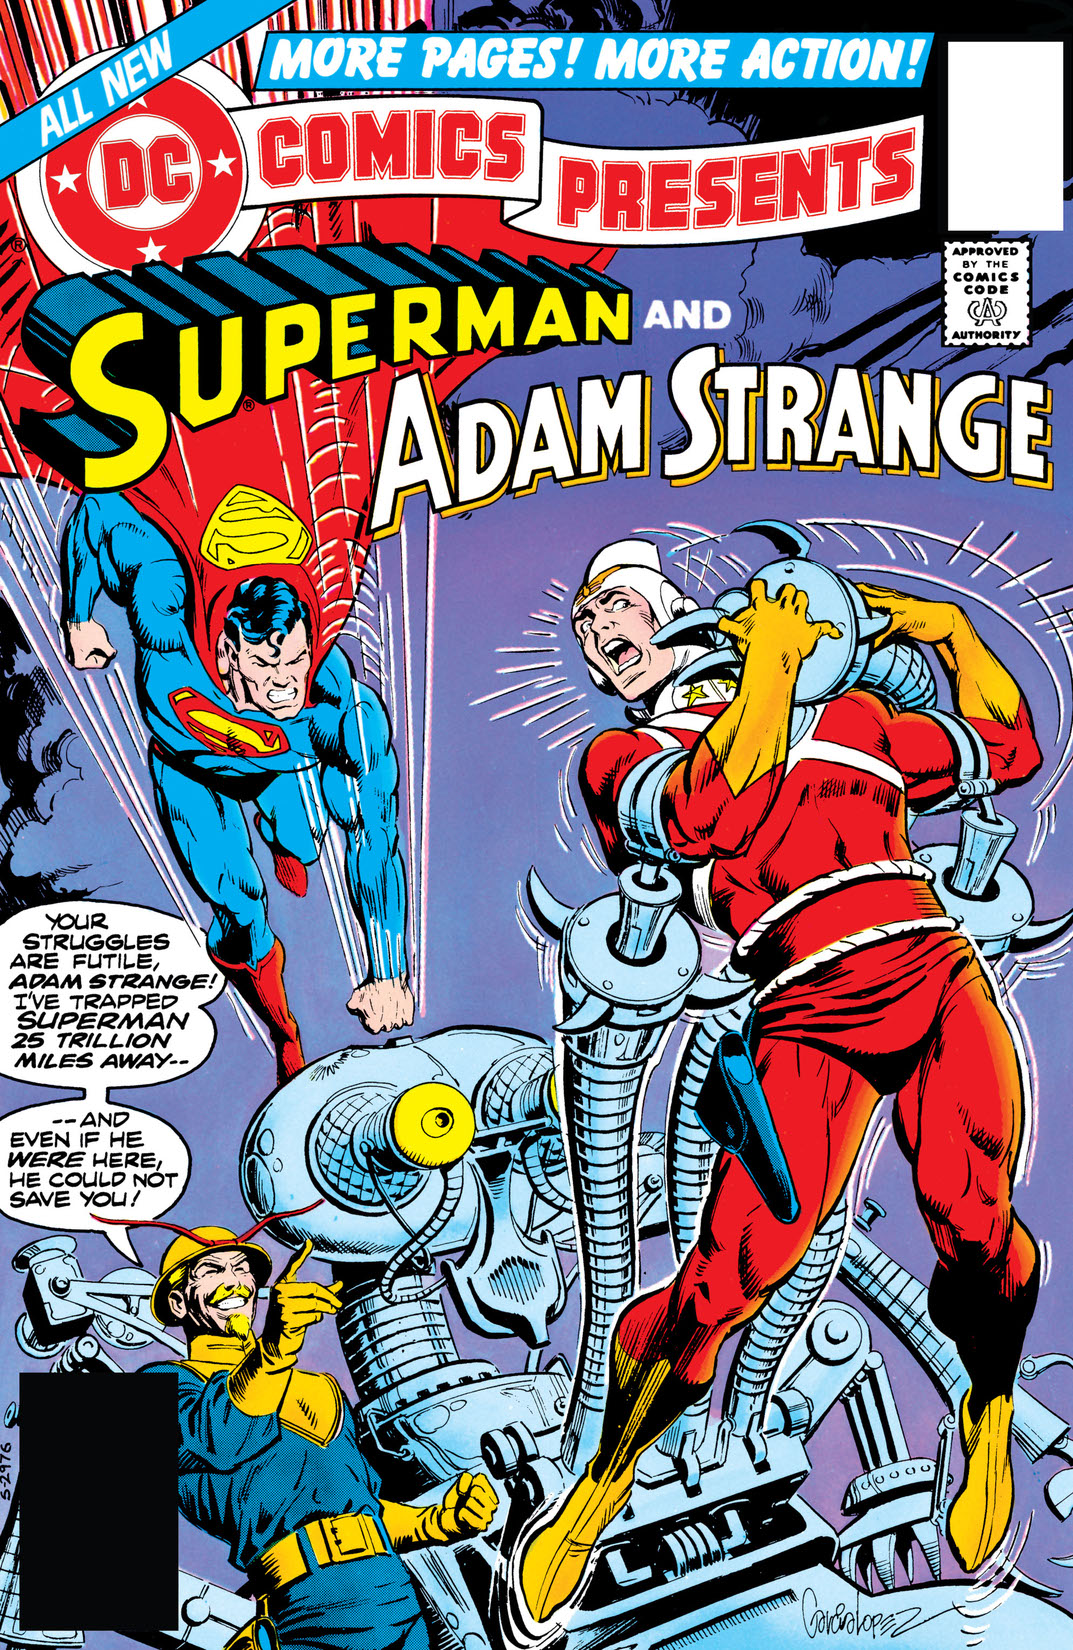 DC Comics Presents (1978-) #3 preview images